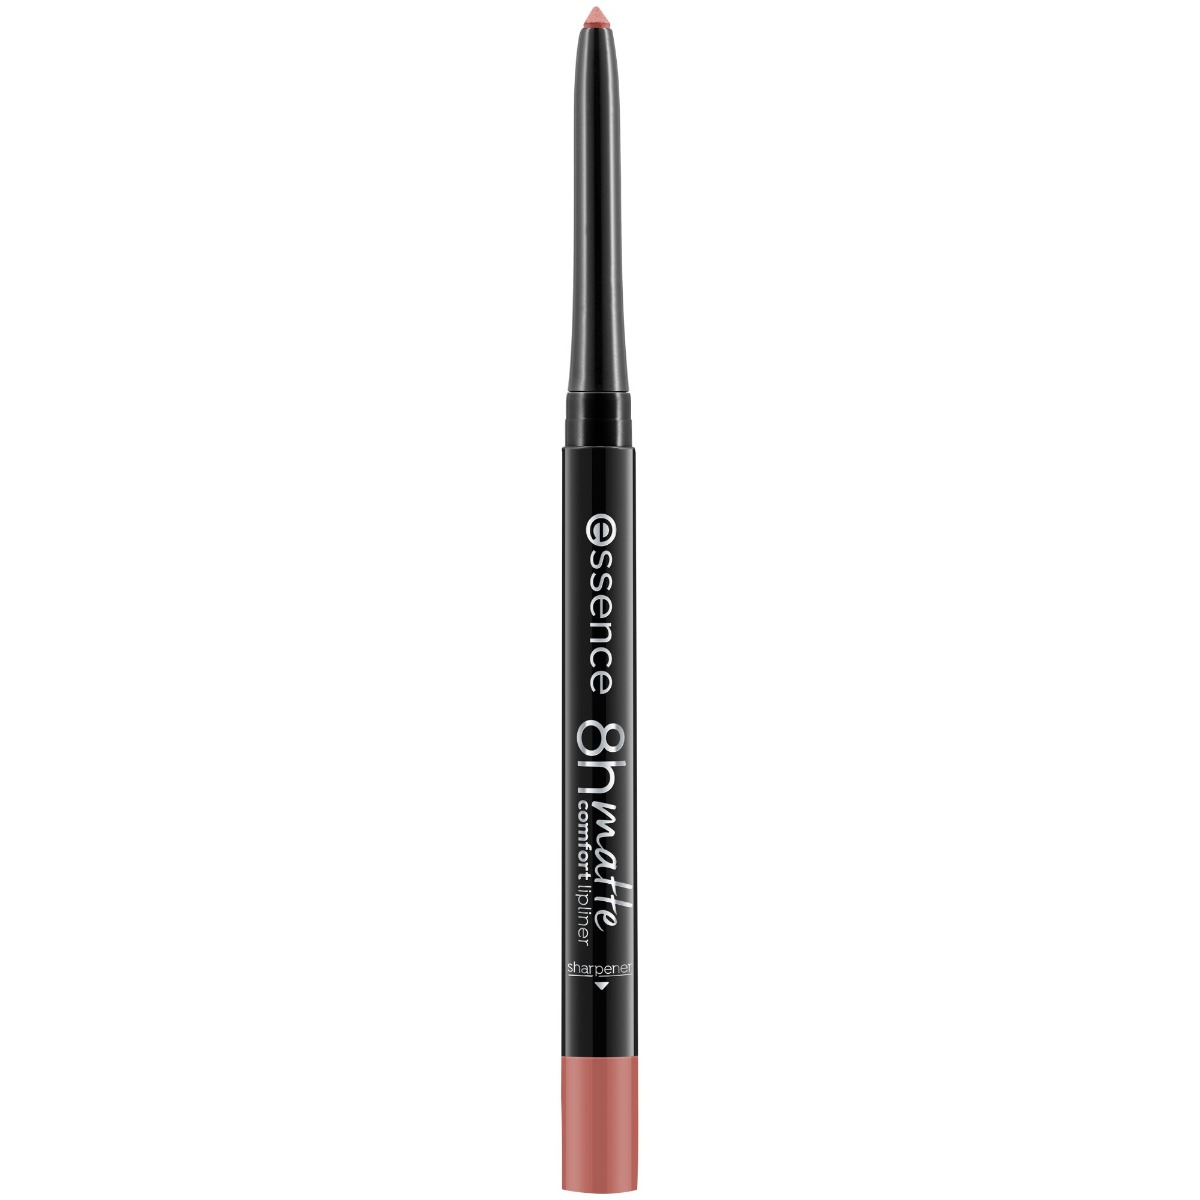 Creion pentru buze Matte Comfort 04 - Rosy Nude, 0.3g, Essence